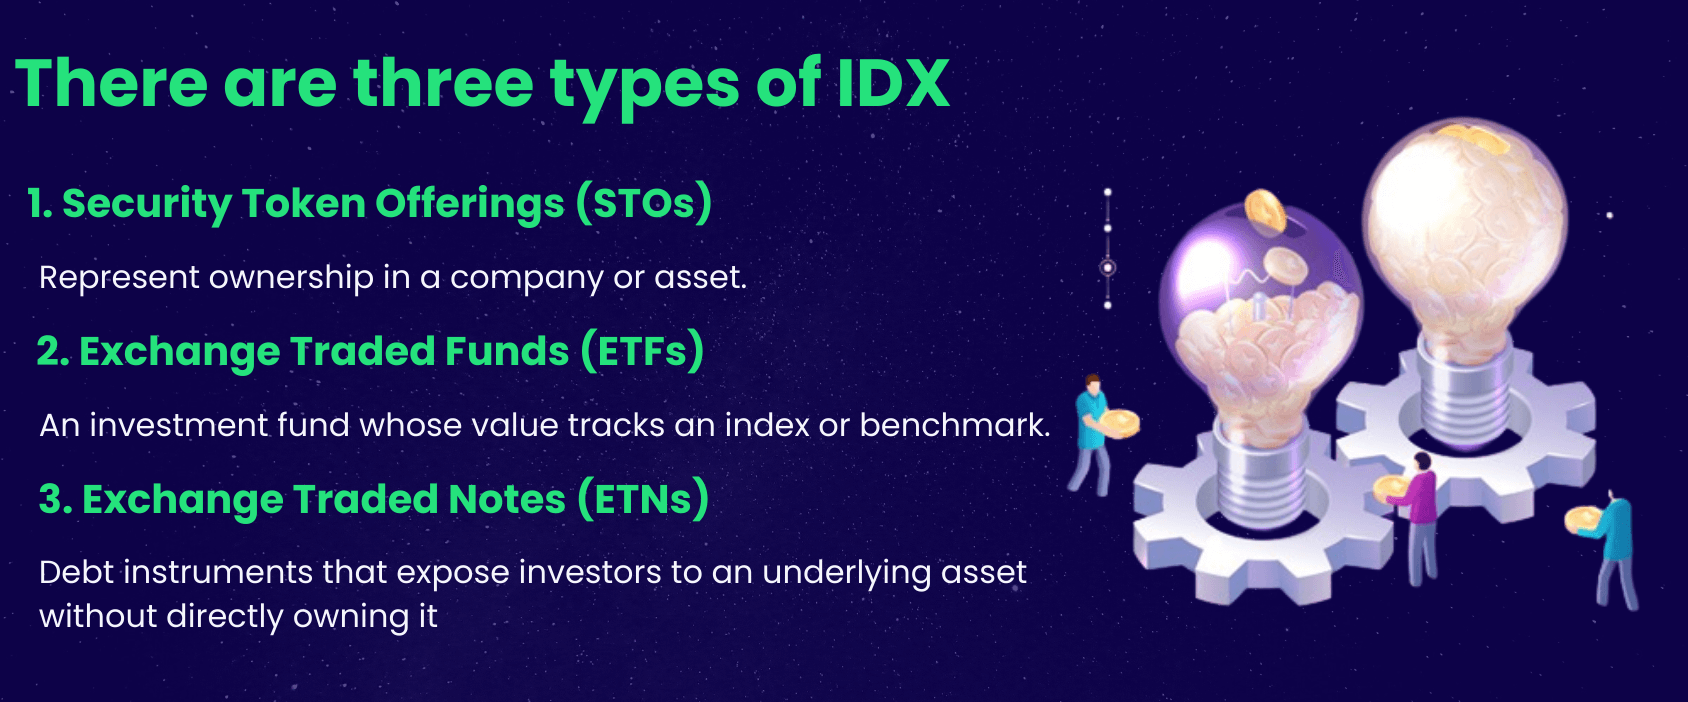 Types of IDX